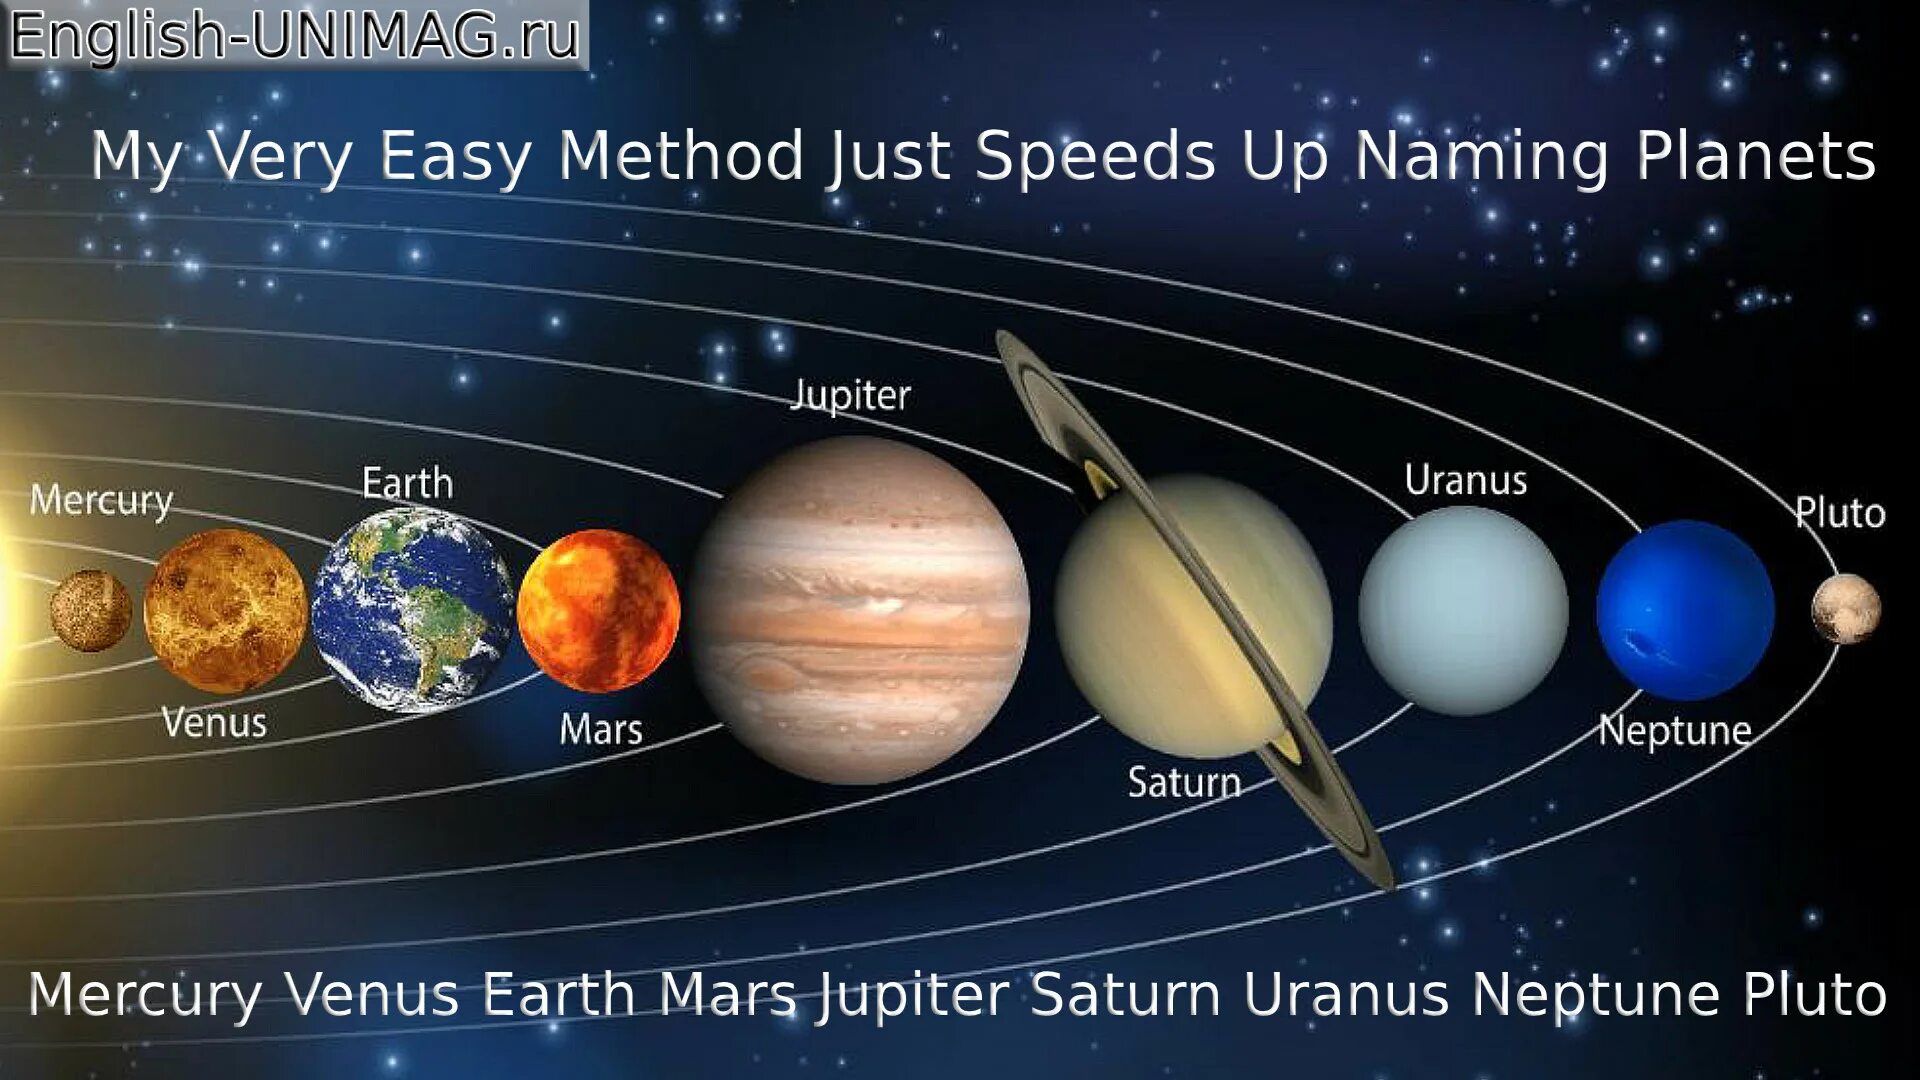 Сколько планет в солнечной системе фото. Название планет солнечной системы по порядку. Солнечная система Планетная система. Расположение планет солнечной системы по порядку. Солнечная система с названиями планет по порядку от солнца.